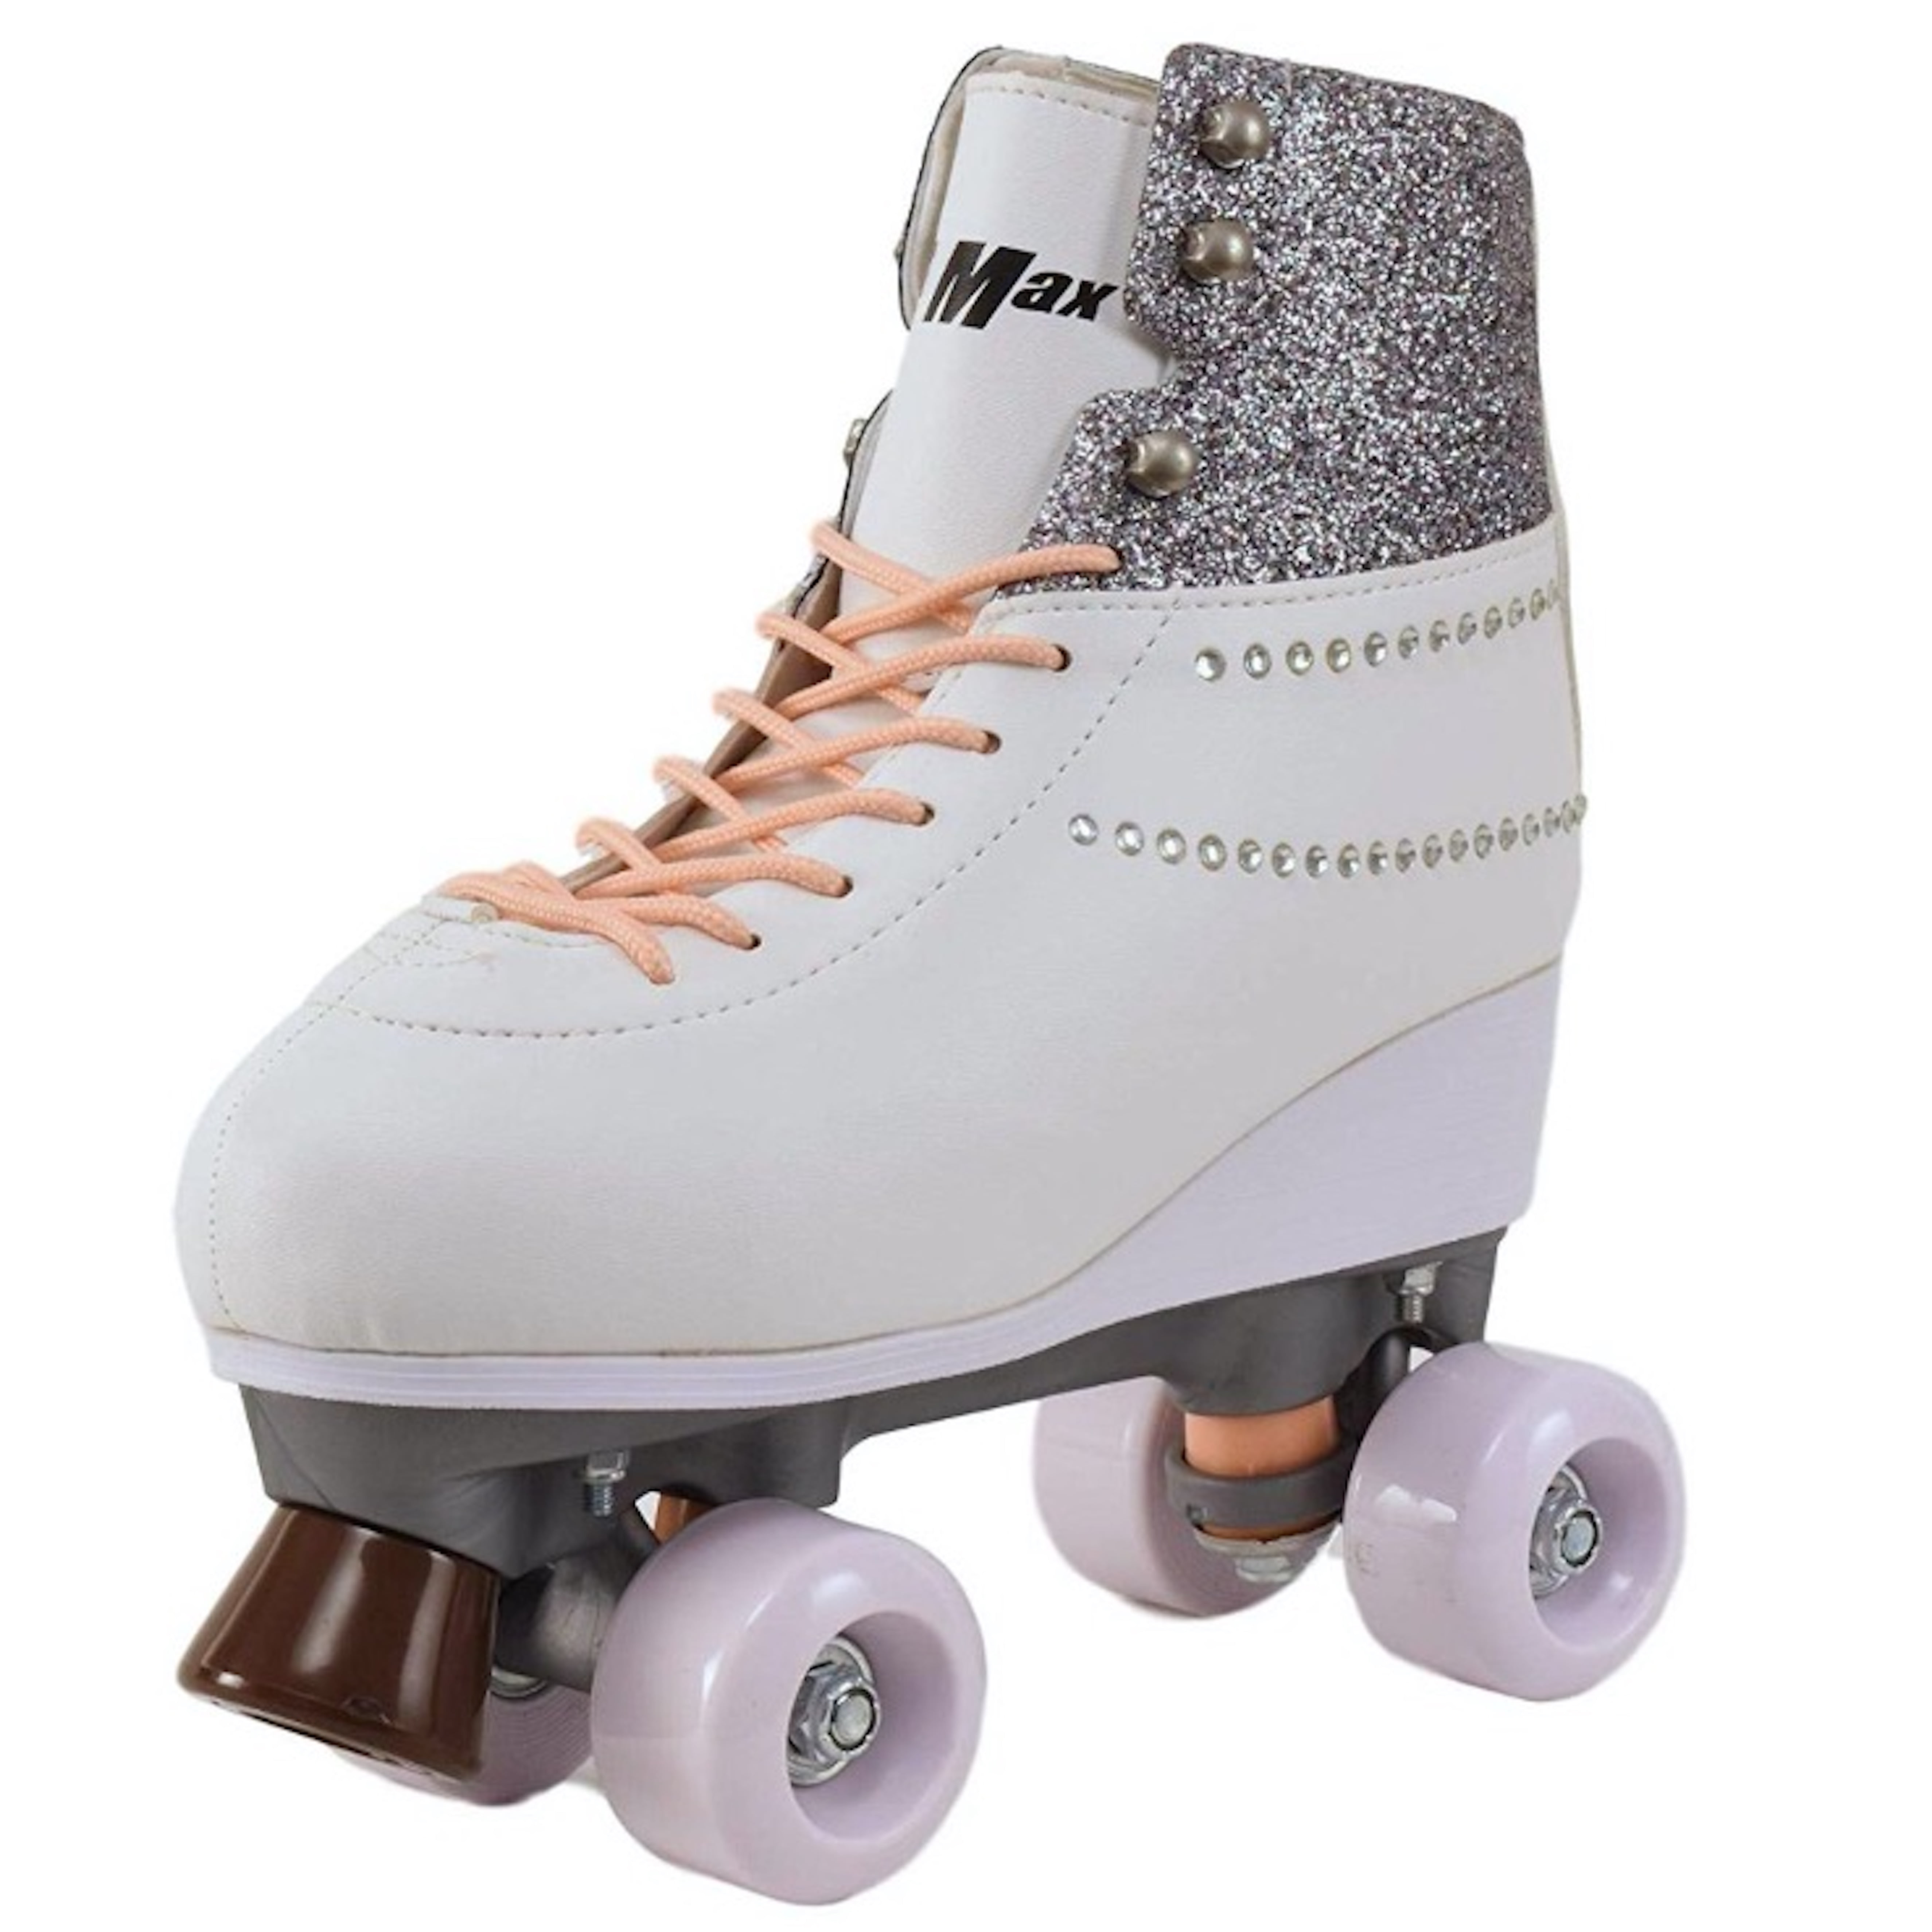 Adjustable Size,Blue-S Childrens Adults Kids Boys Girls 4 Wheel Adjustable Quad Roller Skates Boots，Adjustable Quad Boots Pro Skating ，Suitable for 3-12 Years Old 